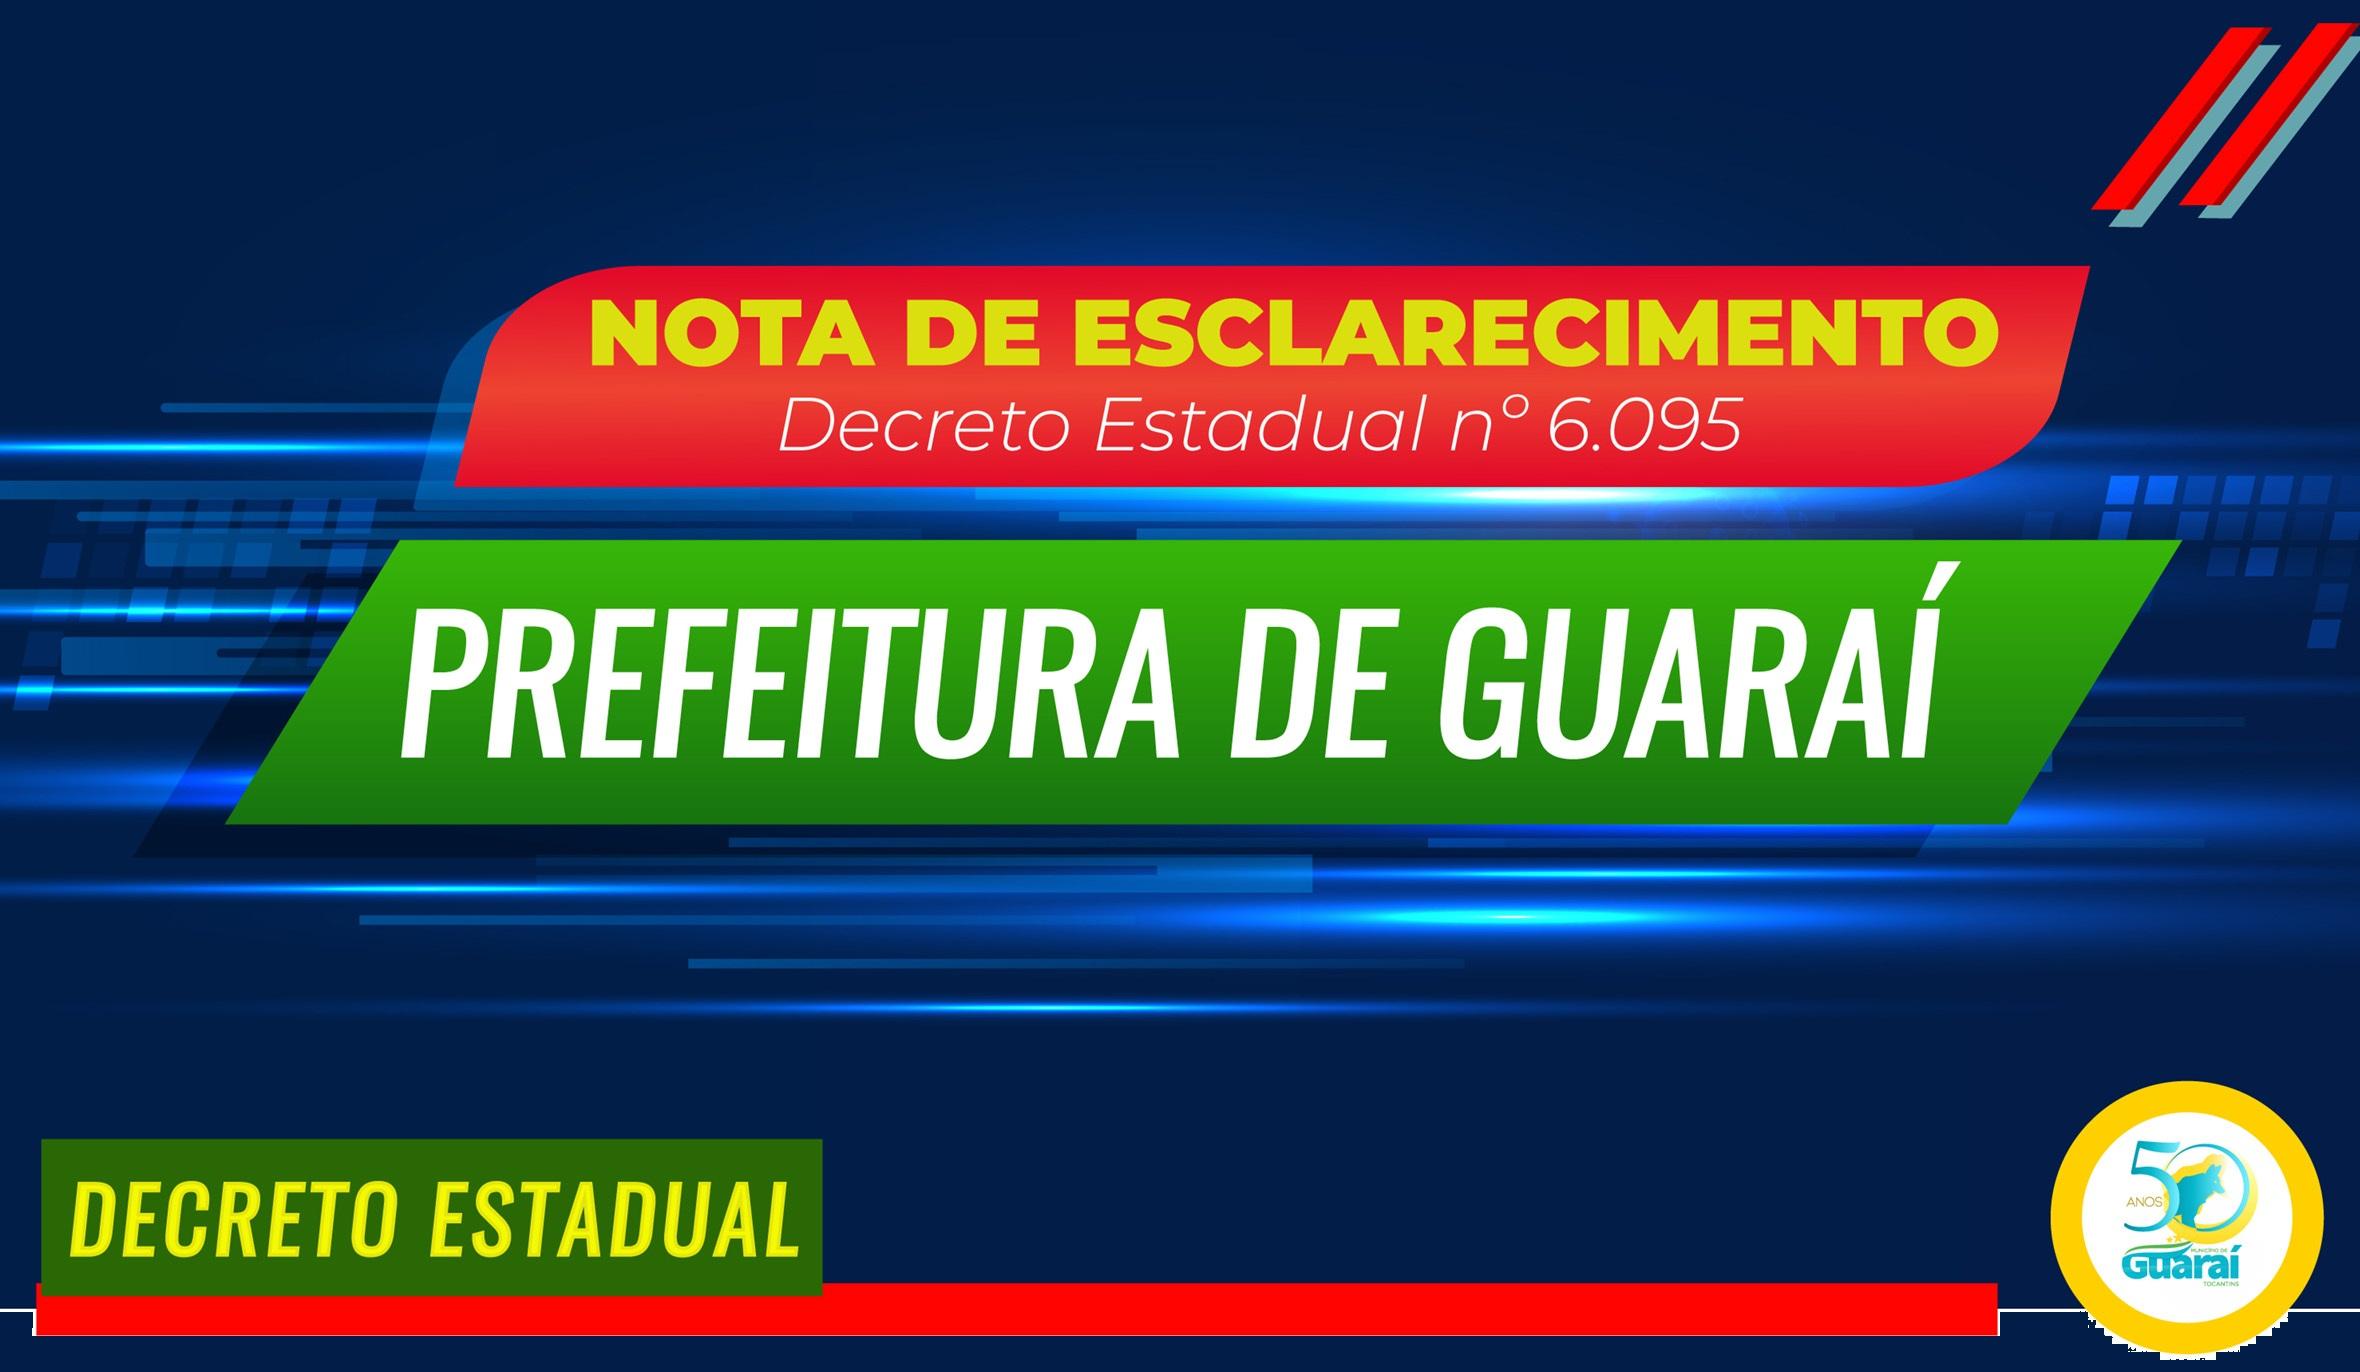 Em nota, Prefeitura de Guaraí diz ter “recebido com surpresa” decisão de lockdown estadual